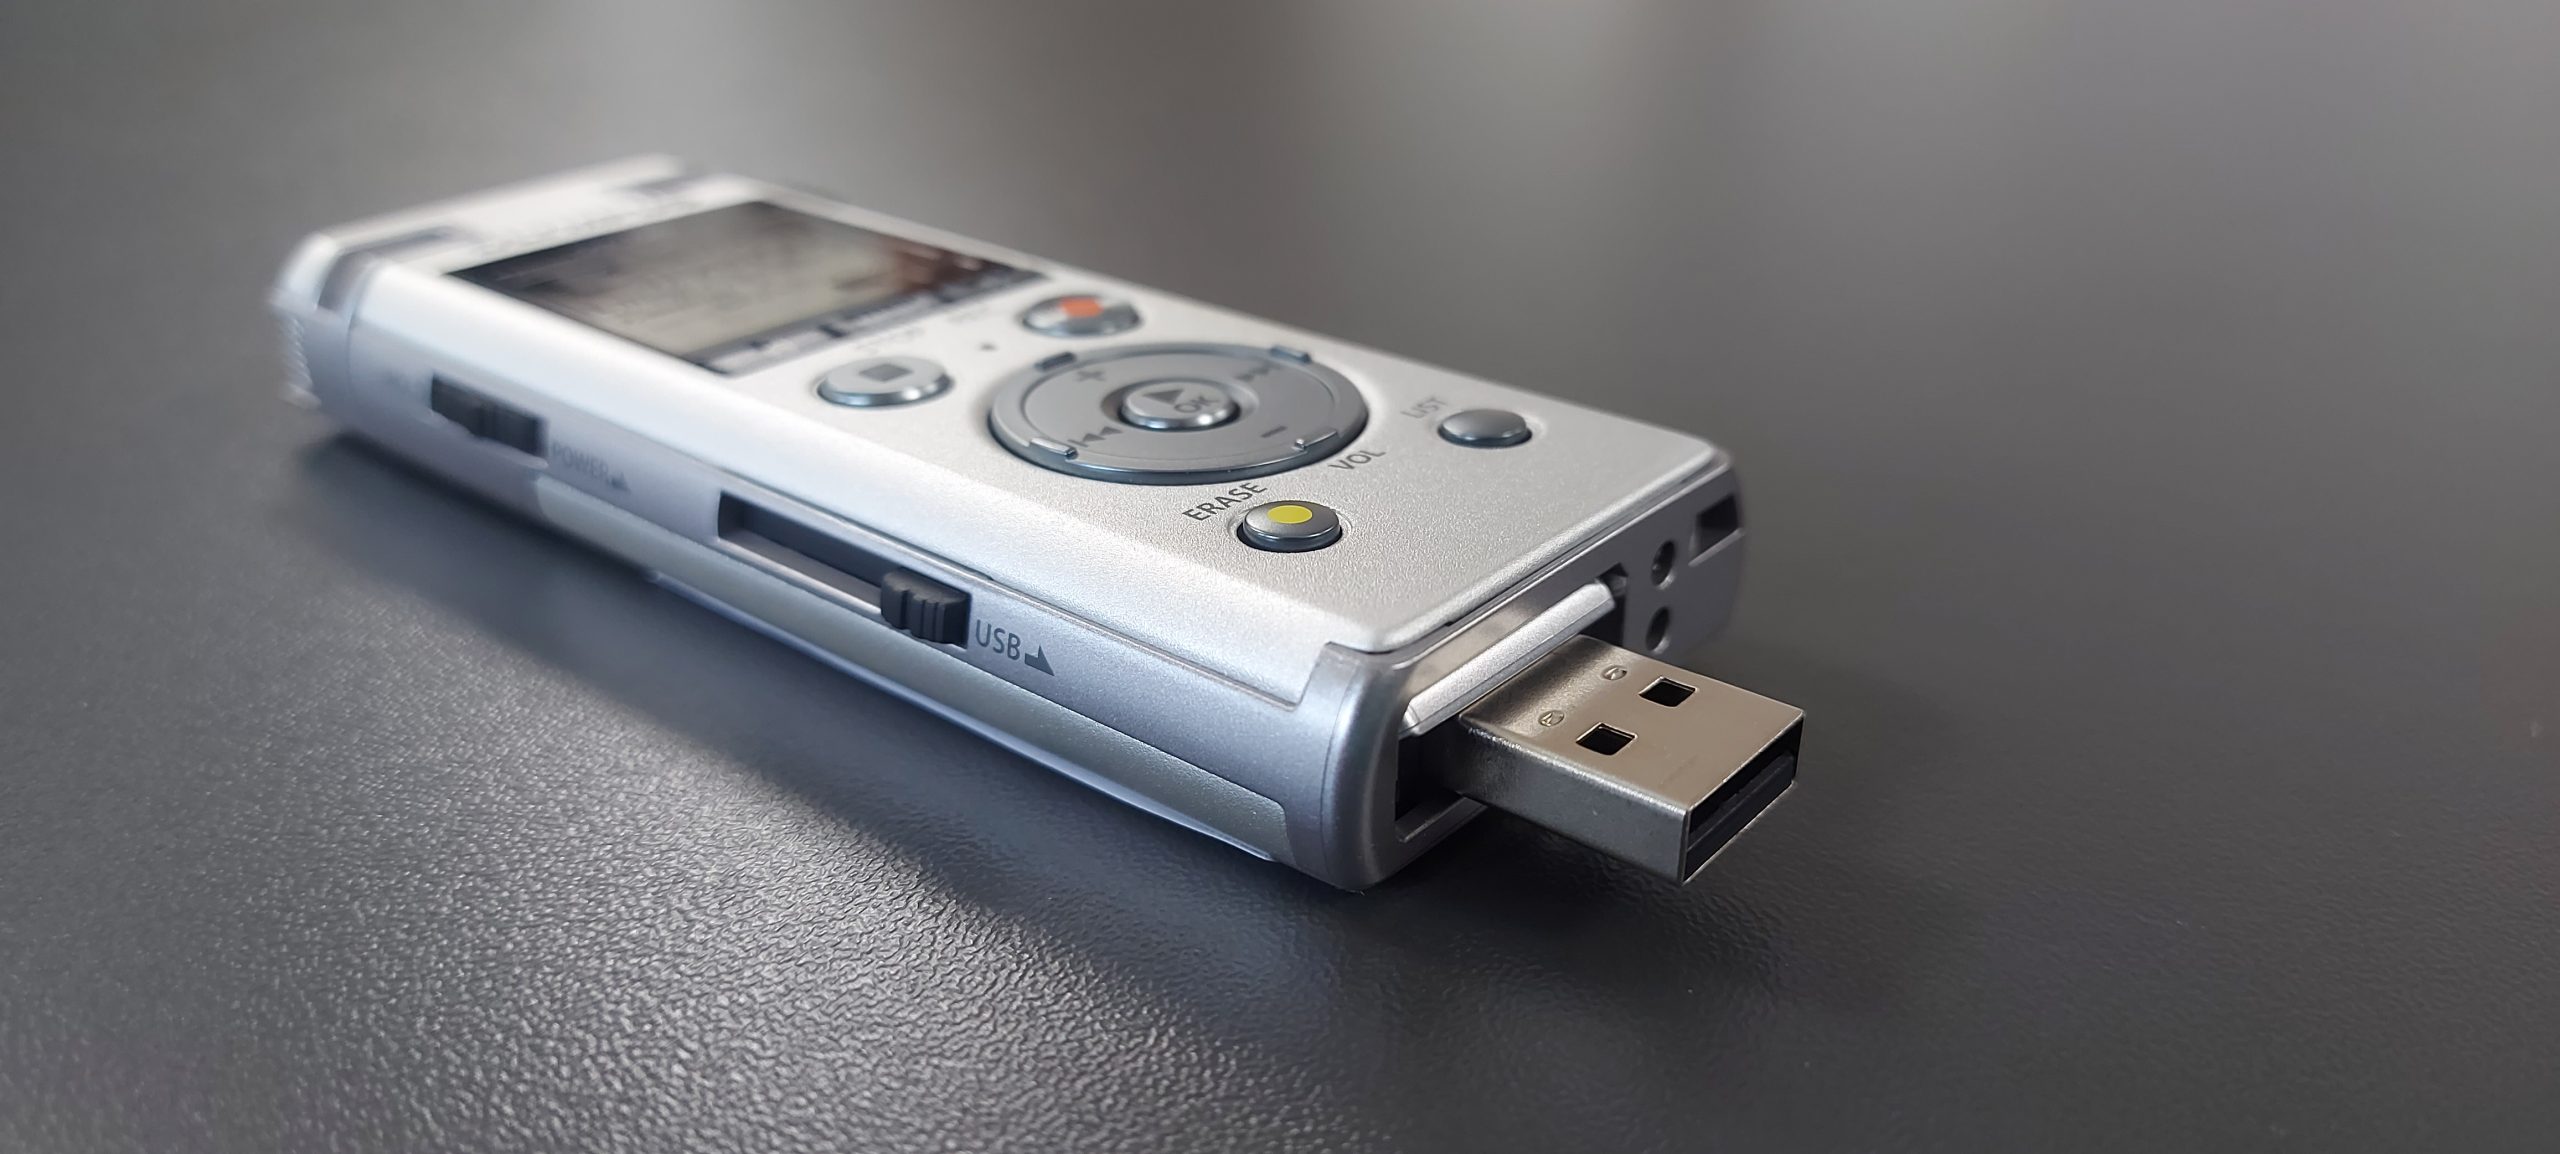 Zdjęcie przedstawia dyktafon Olympus DM-720 z otwartym portem USB, na szarym tle